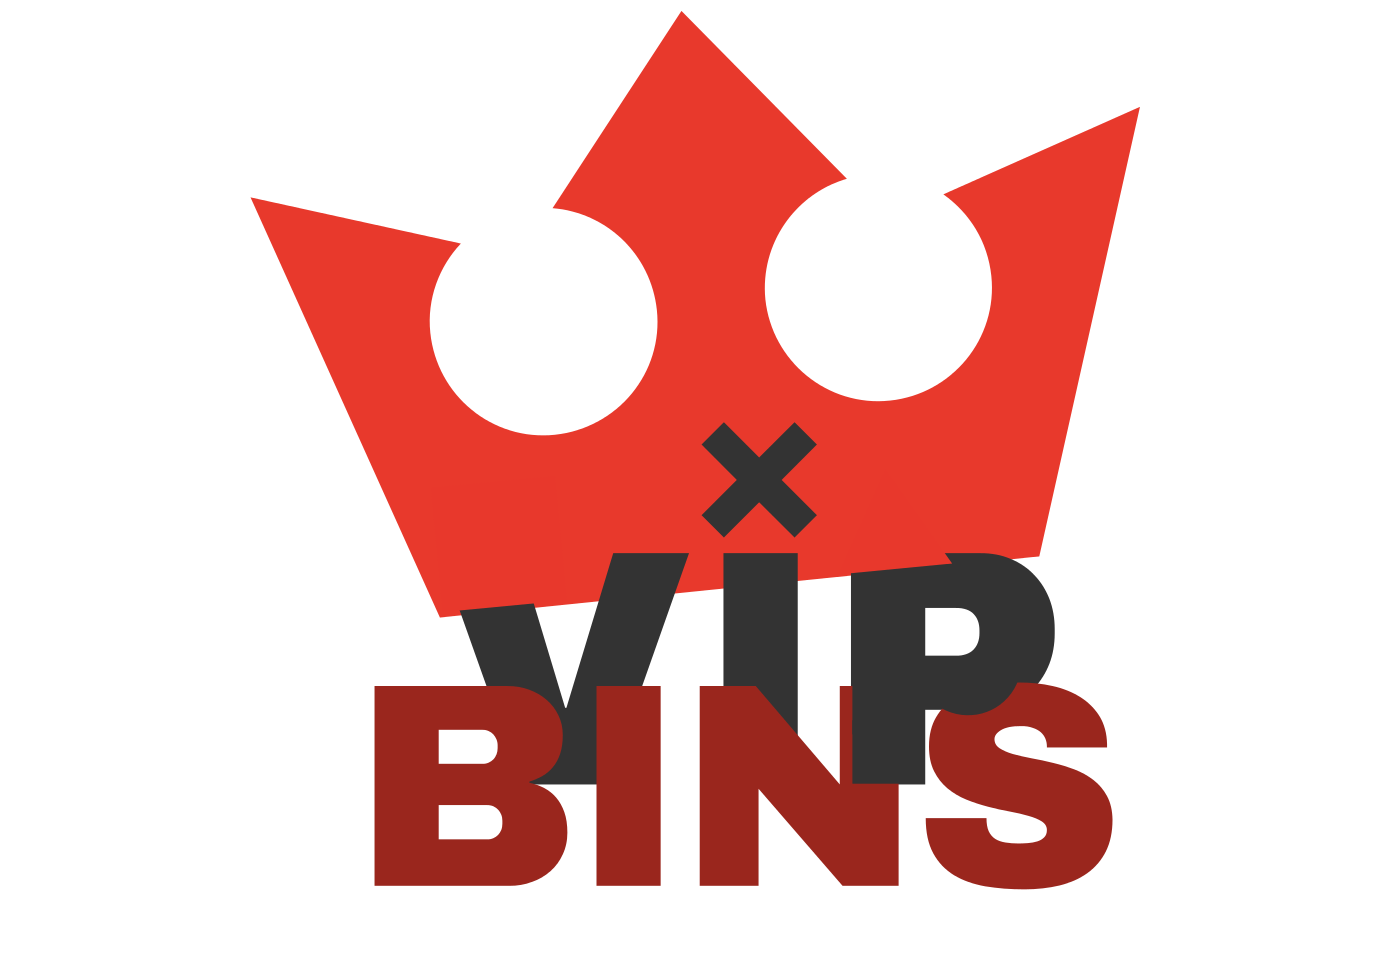 VIP BINS